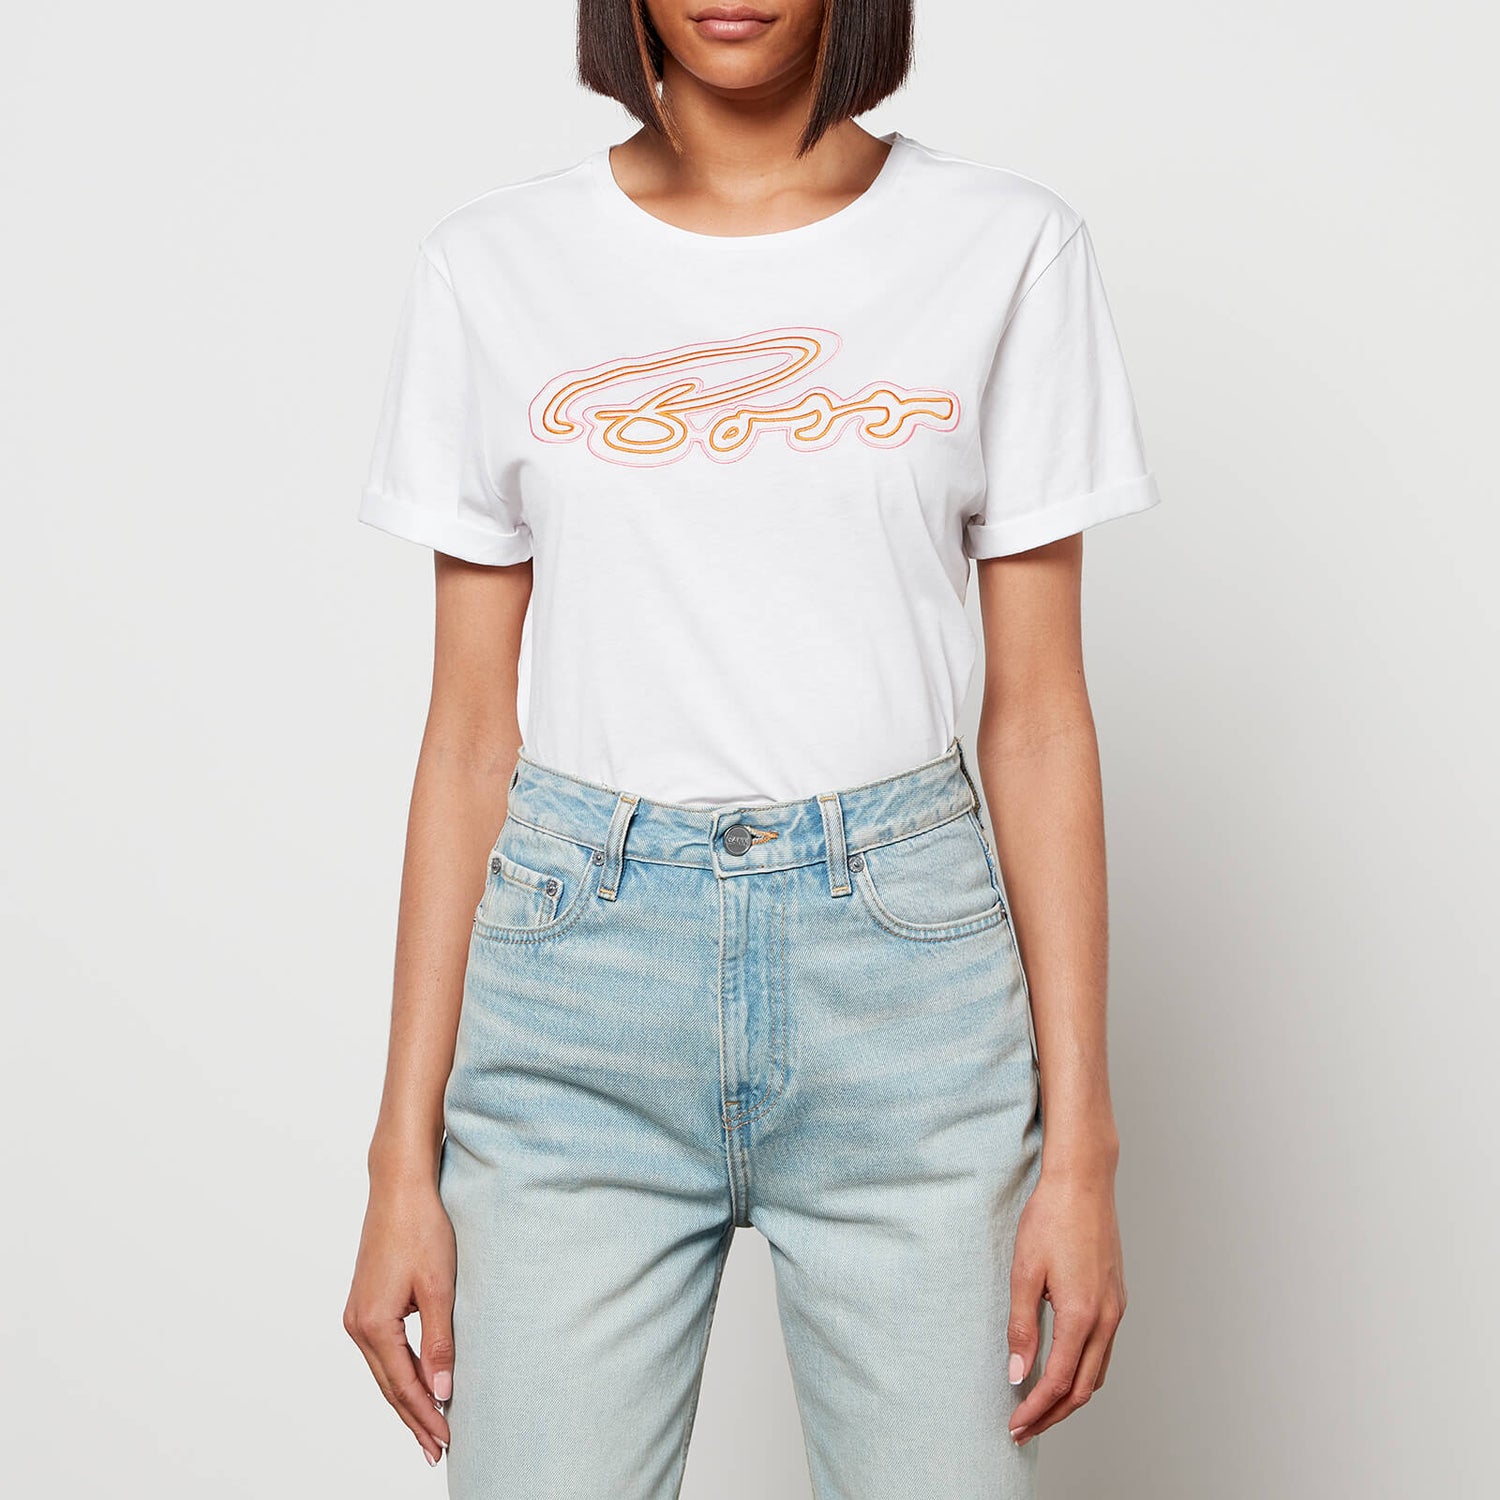 BOSS Women's Esummer T-Shirt - Open White - XS